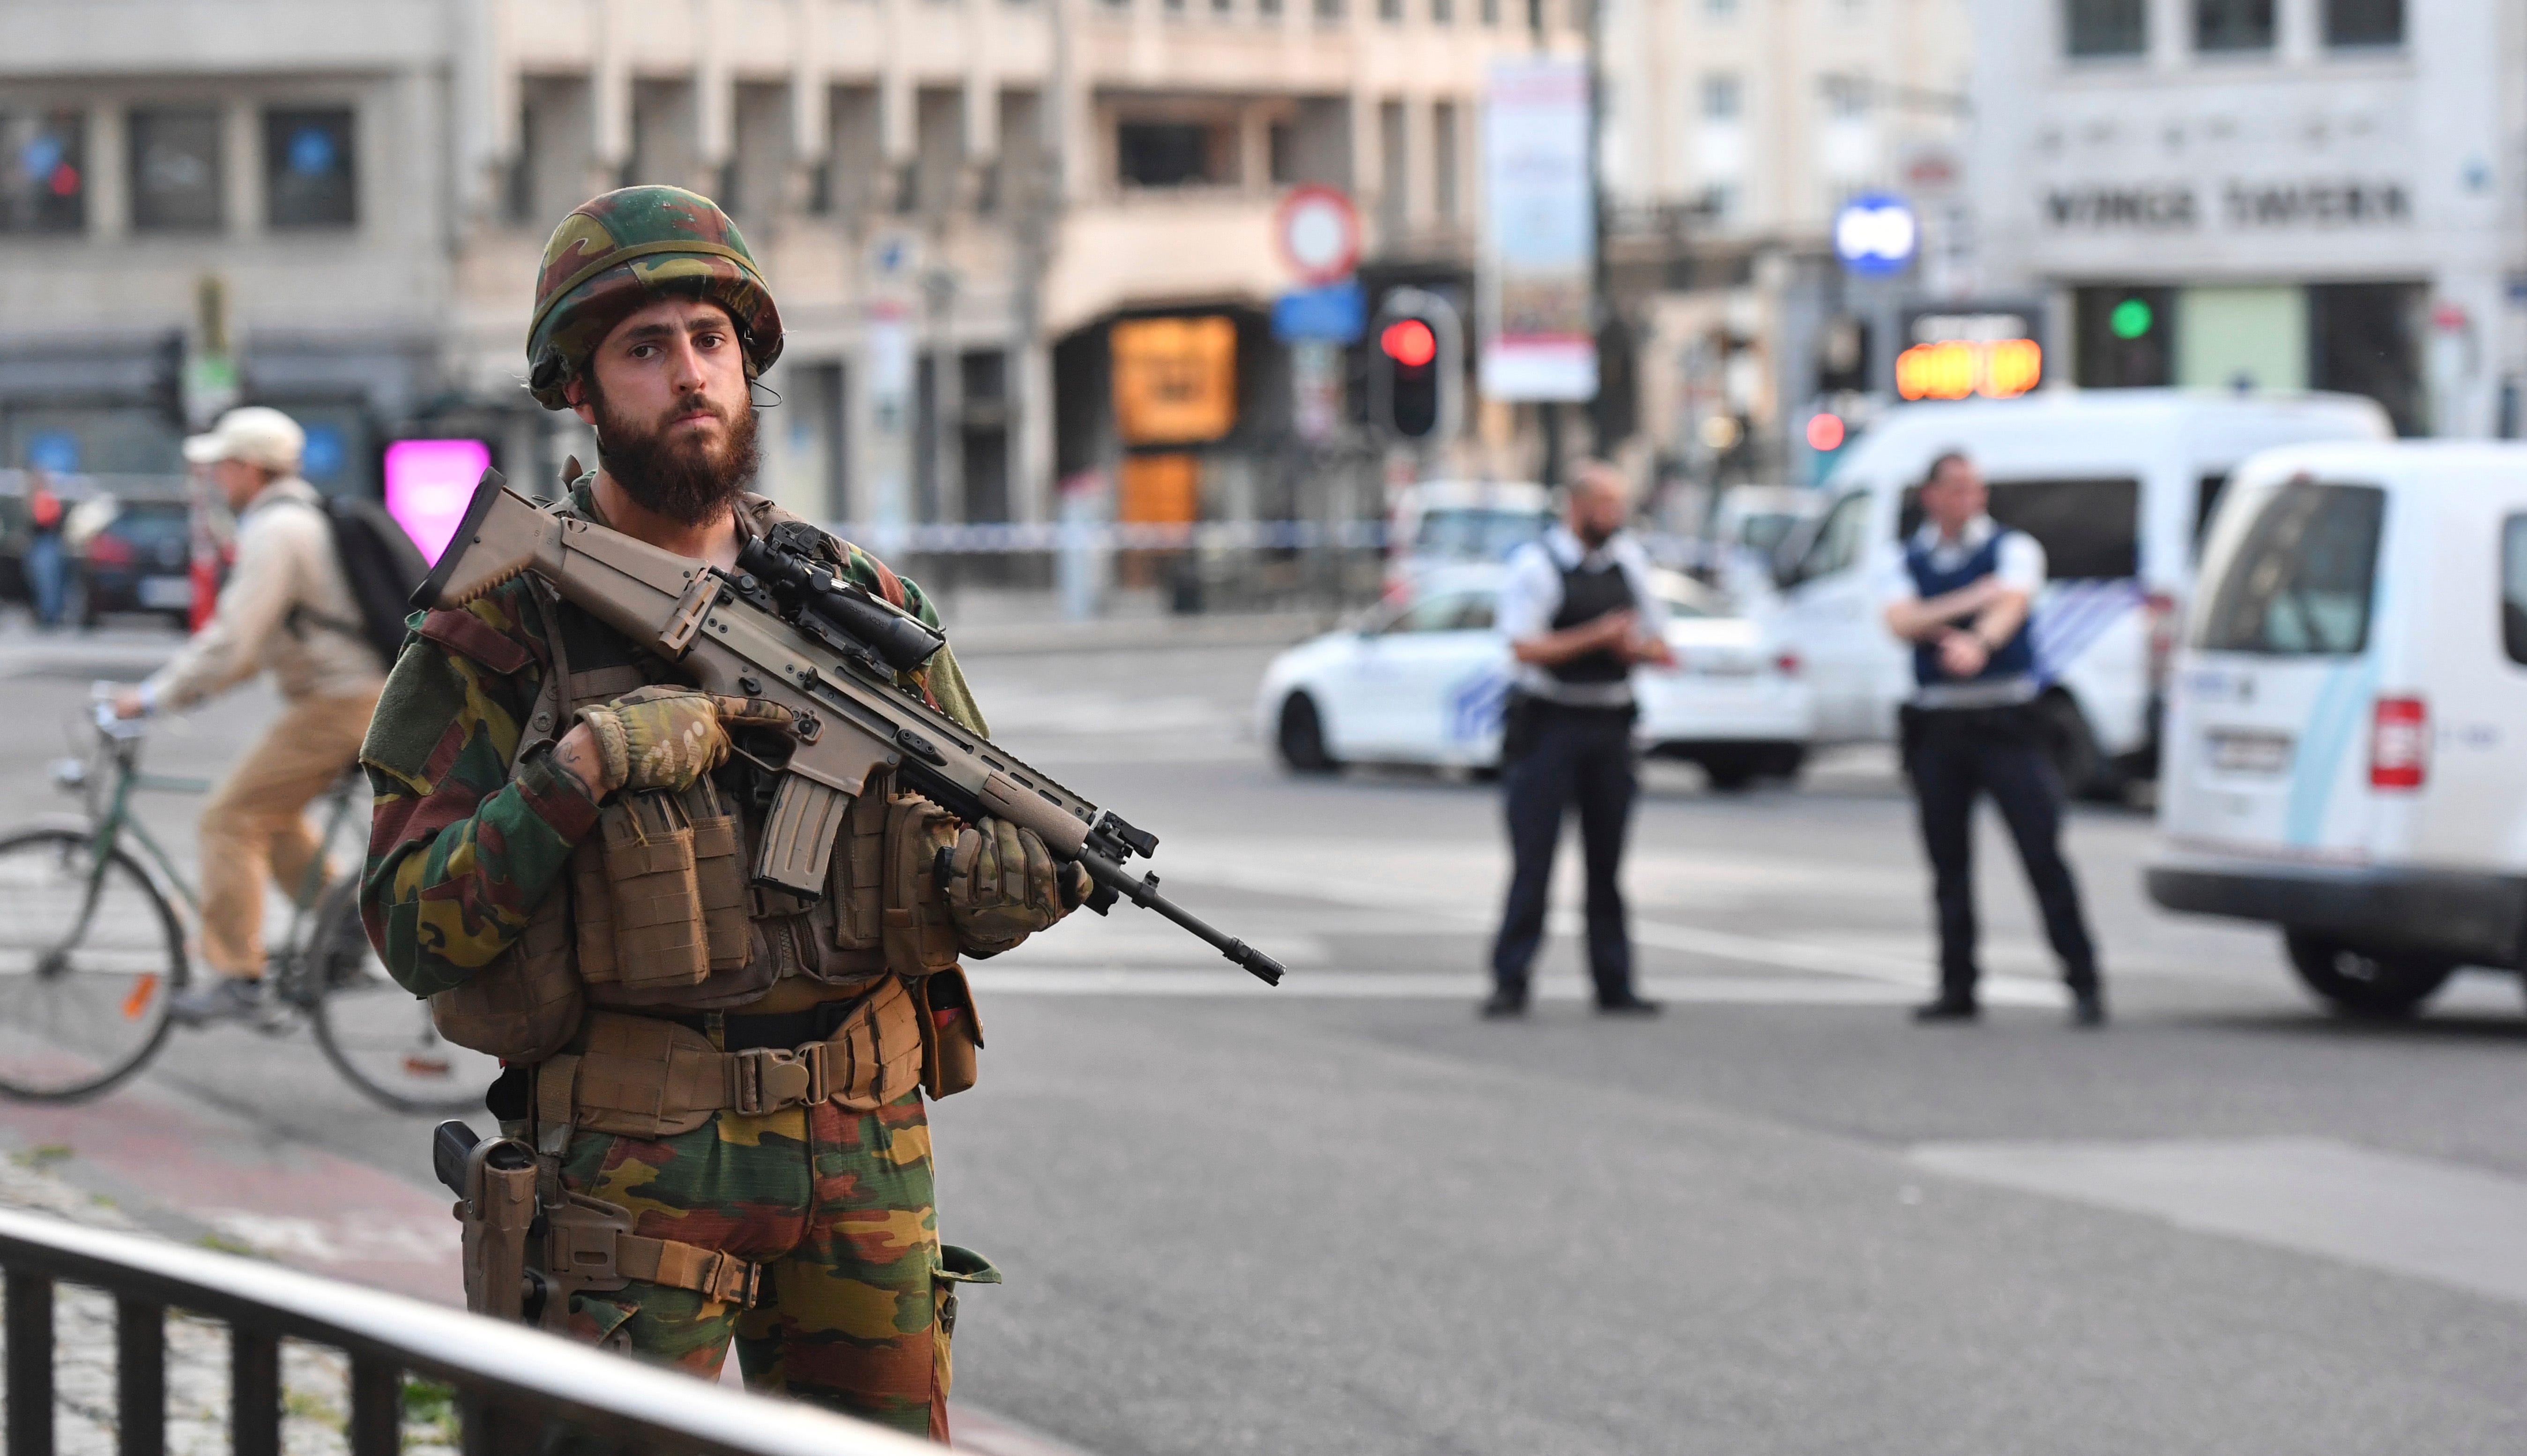 Brussels soldiers shoot man wearing bomb belt